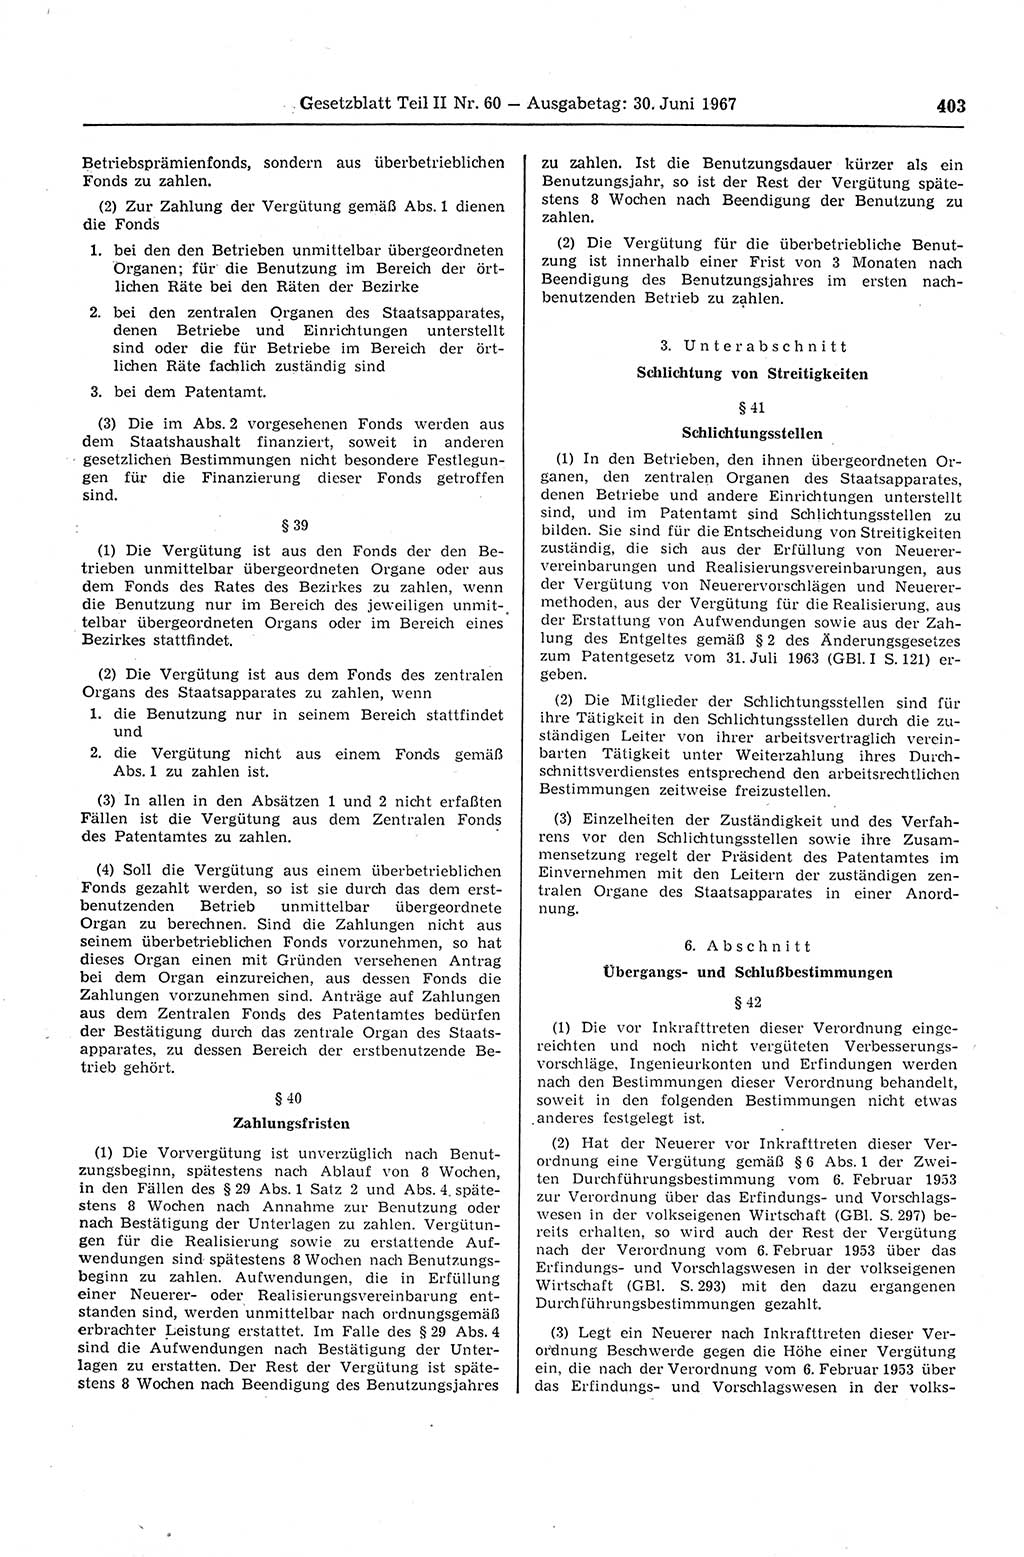 Gesetzblatt (GBl.) der Deutschen Demokratischen Republik (DDR) Teil ⅠⅠ 1967, Seite 403 (GBl. DDR ⅠⅠ 1967, S. 403)